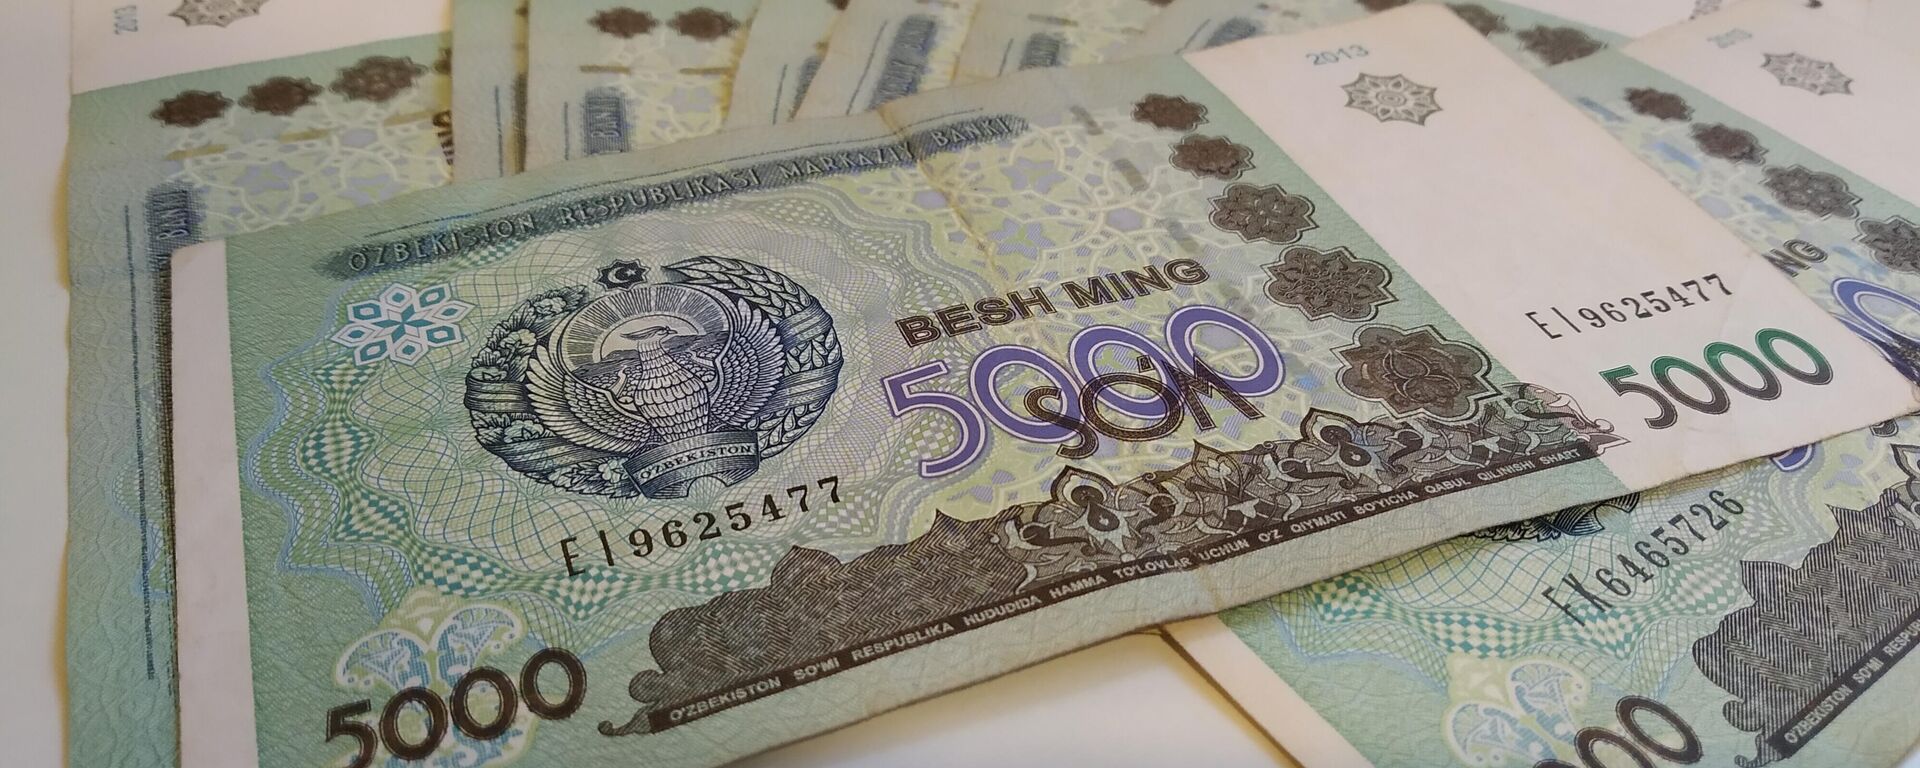 Узбекские деньги, 5000 сумов - Sputnik Узбекистан, 1920, 26.08.2020